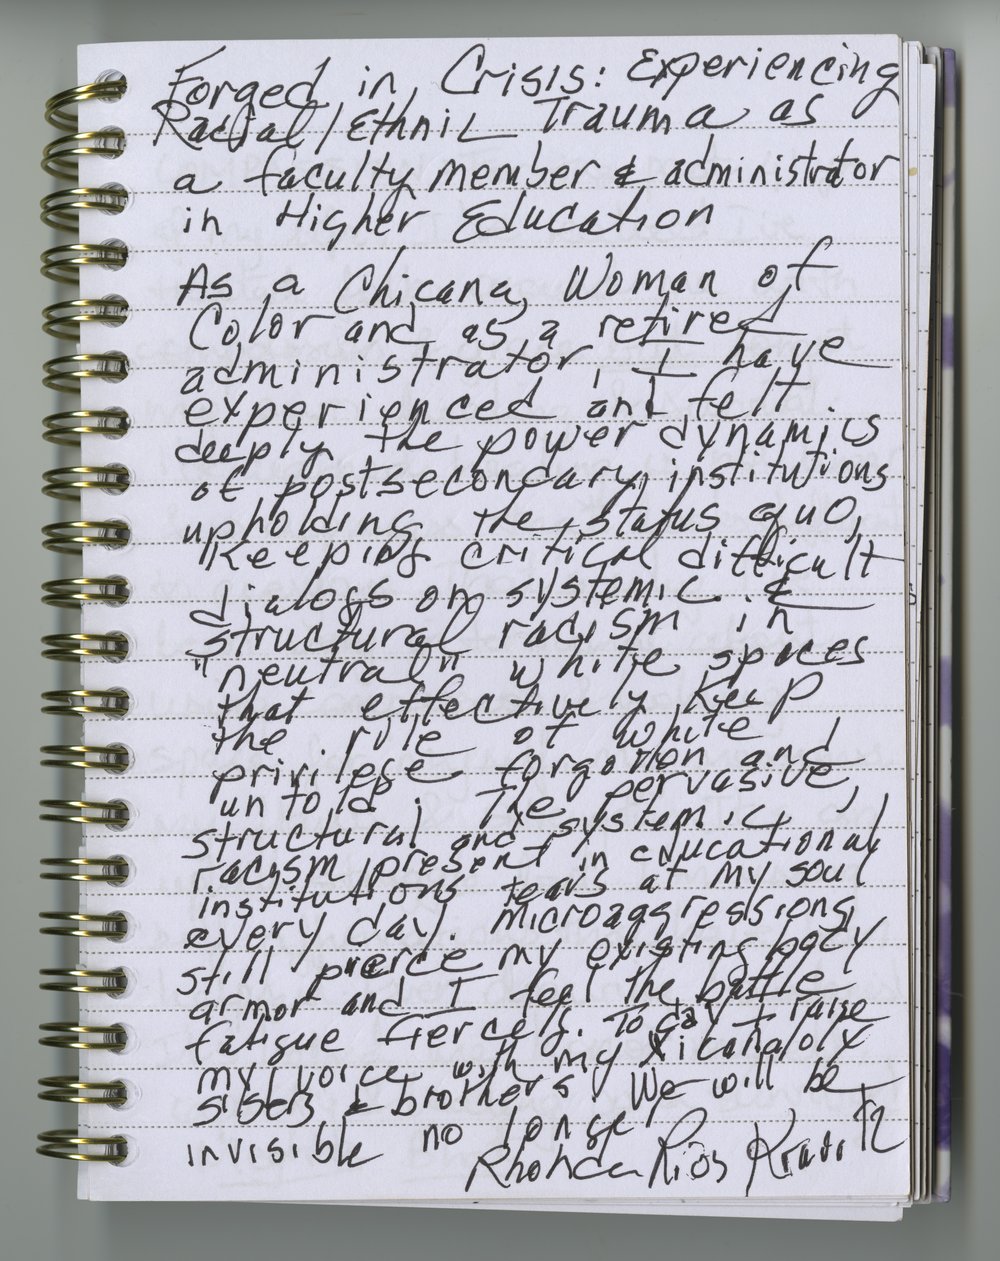 Rhonda Rios Kravitz's handwritten journal entry.